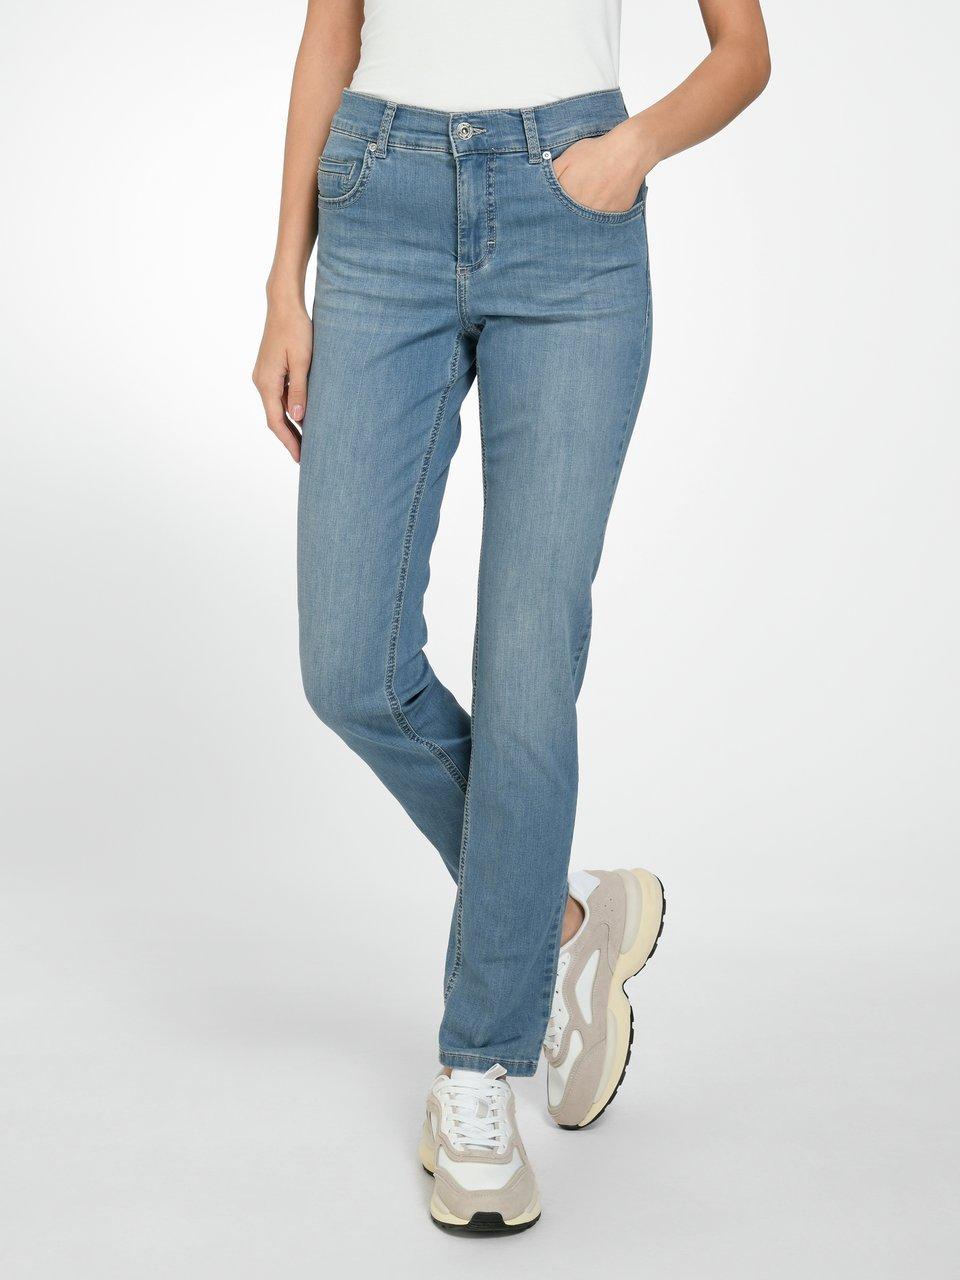 ANGELS - Jeans Regular Fit Modell Cici - Blue denim